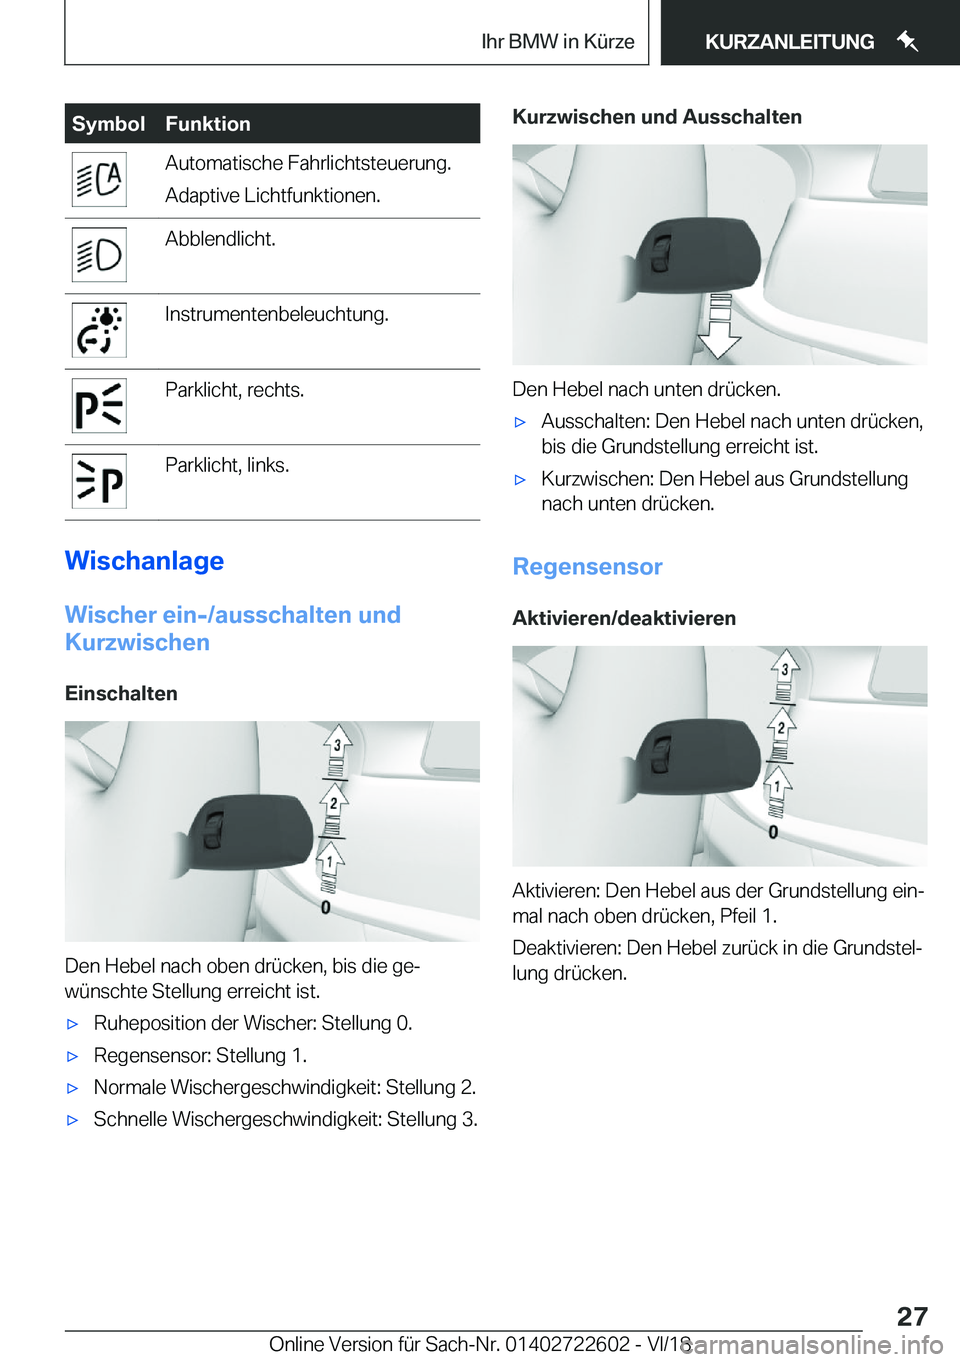 BMW 5 SERIES 2019  Betriebsanleitungen (in German) �S�y�m�b�o�l�F�u�n�k�t�i�o�n�A�u�t�o�m�a�t�i�s�c�h�e��F�a�h�r�l�i�c�h�t�s�t�e�u�e�r�u�n�g�.
�A�d�a�p�t�i�v�e��L�i�c�h�t�f�u�n�k�t�i�o�n�e�n�.�A�b�b�l�e�n�d�l�i�c�h�t�.�I�n�s�t�r�u�m�e�n�t�e�n�b�e�l�